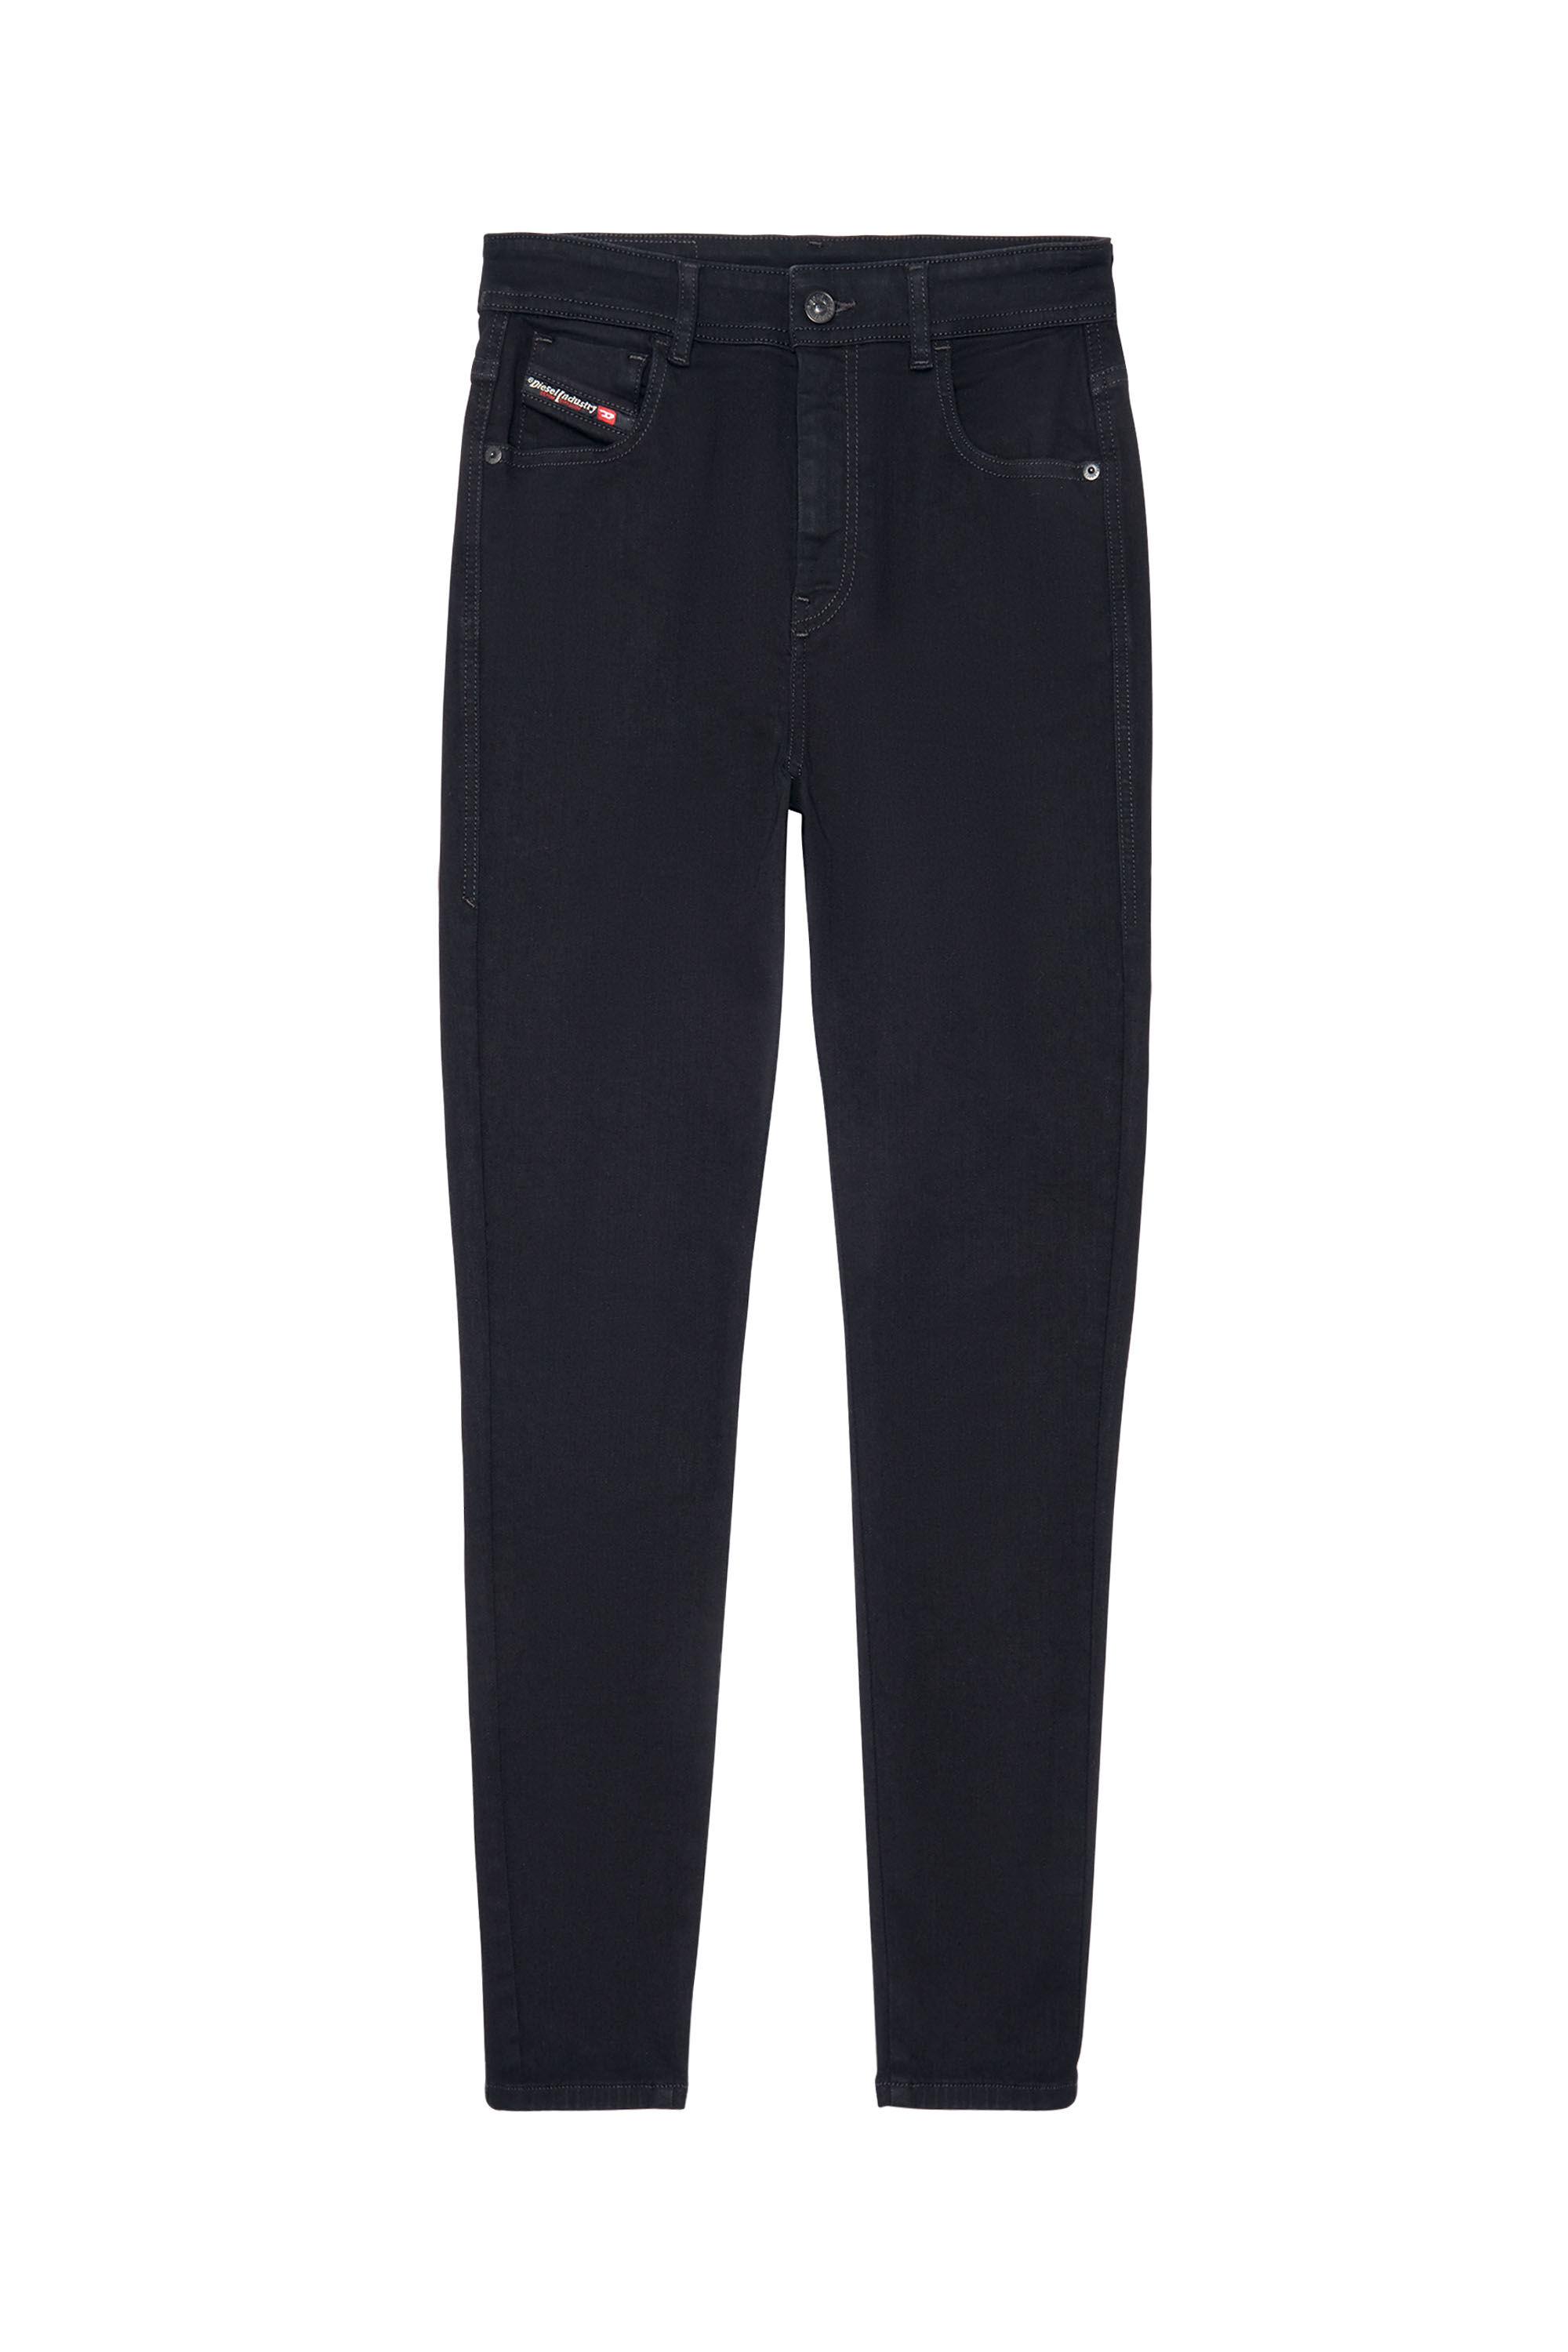 Diesel - Woman Super skinny Jeans 1984 Slandy-High 069EF, Black/Dark grey - Image 2